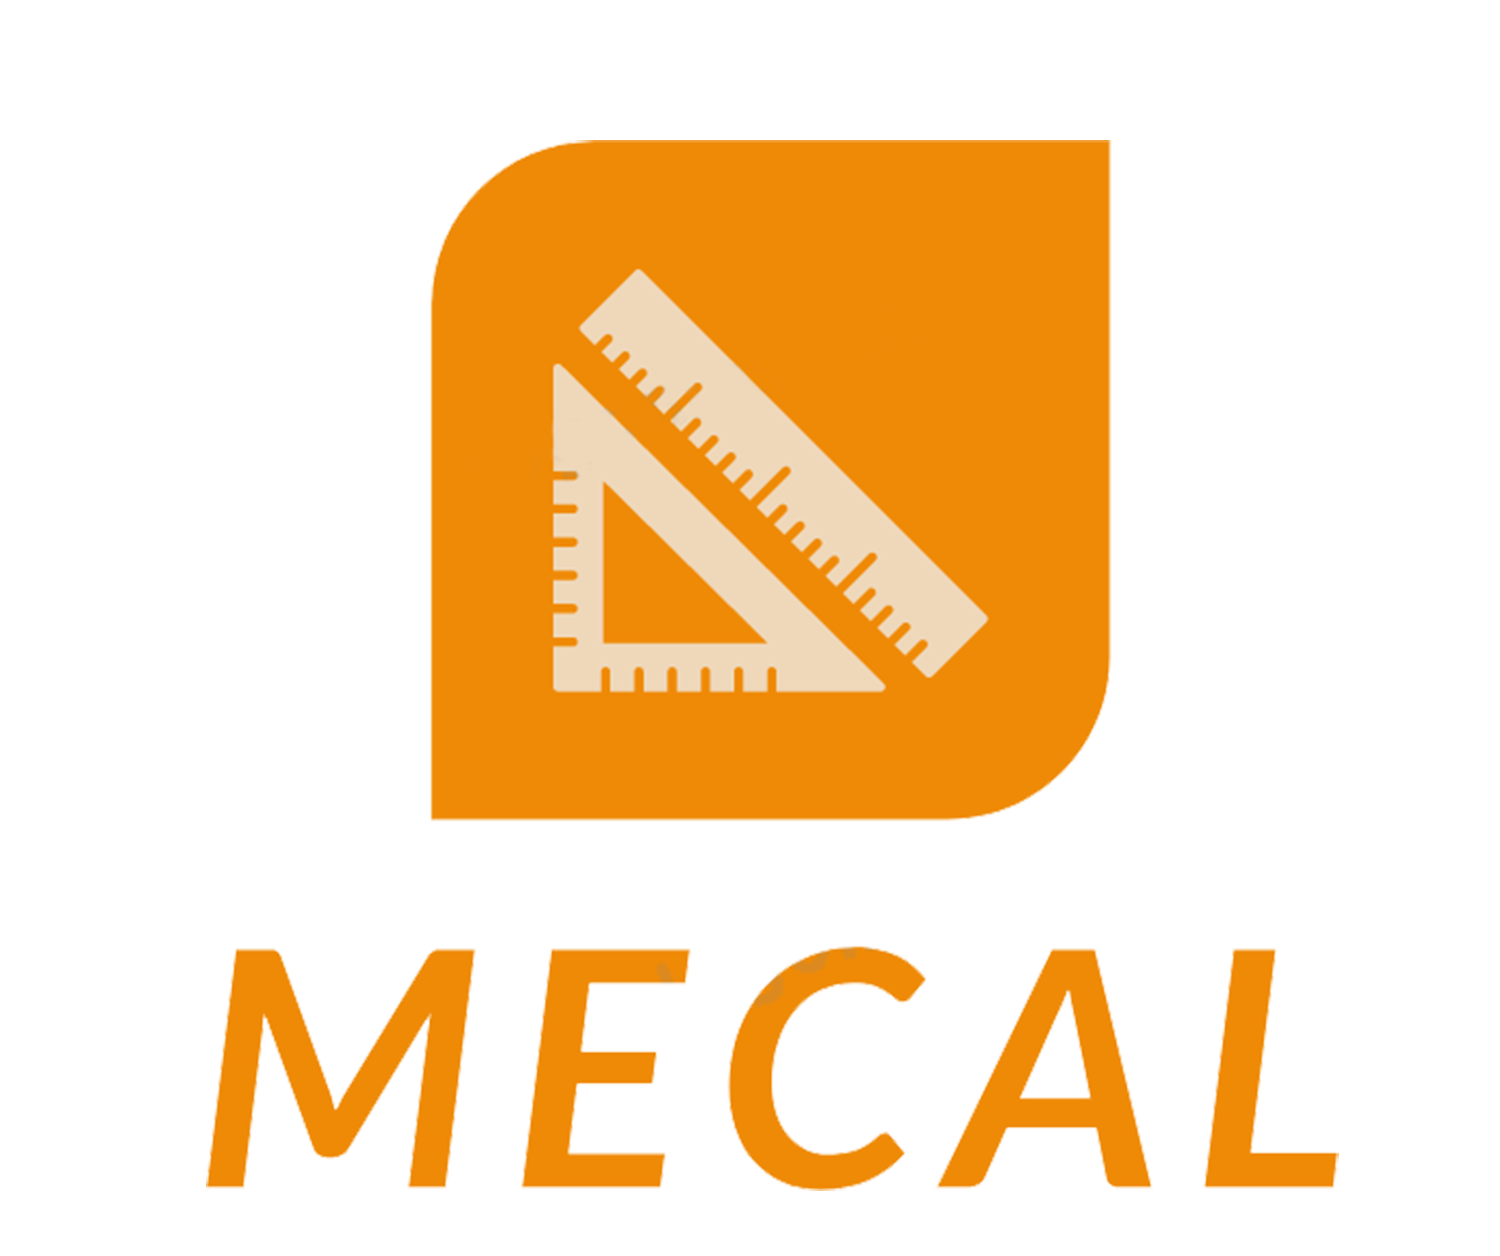 Công ty cổ phần MECAL Việt Nam là nhà cung cấp dịch vụ hiệu chuẩn, kiểm định uy tín và chính xác trên thị trường.